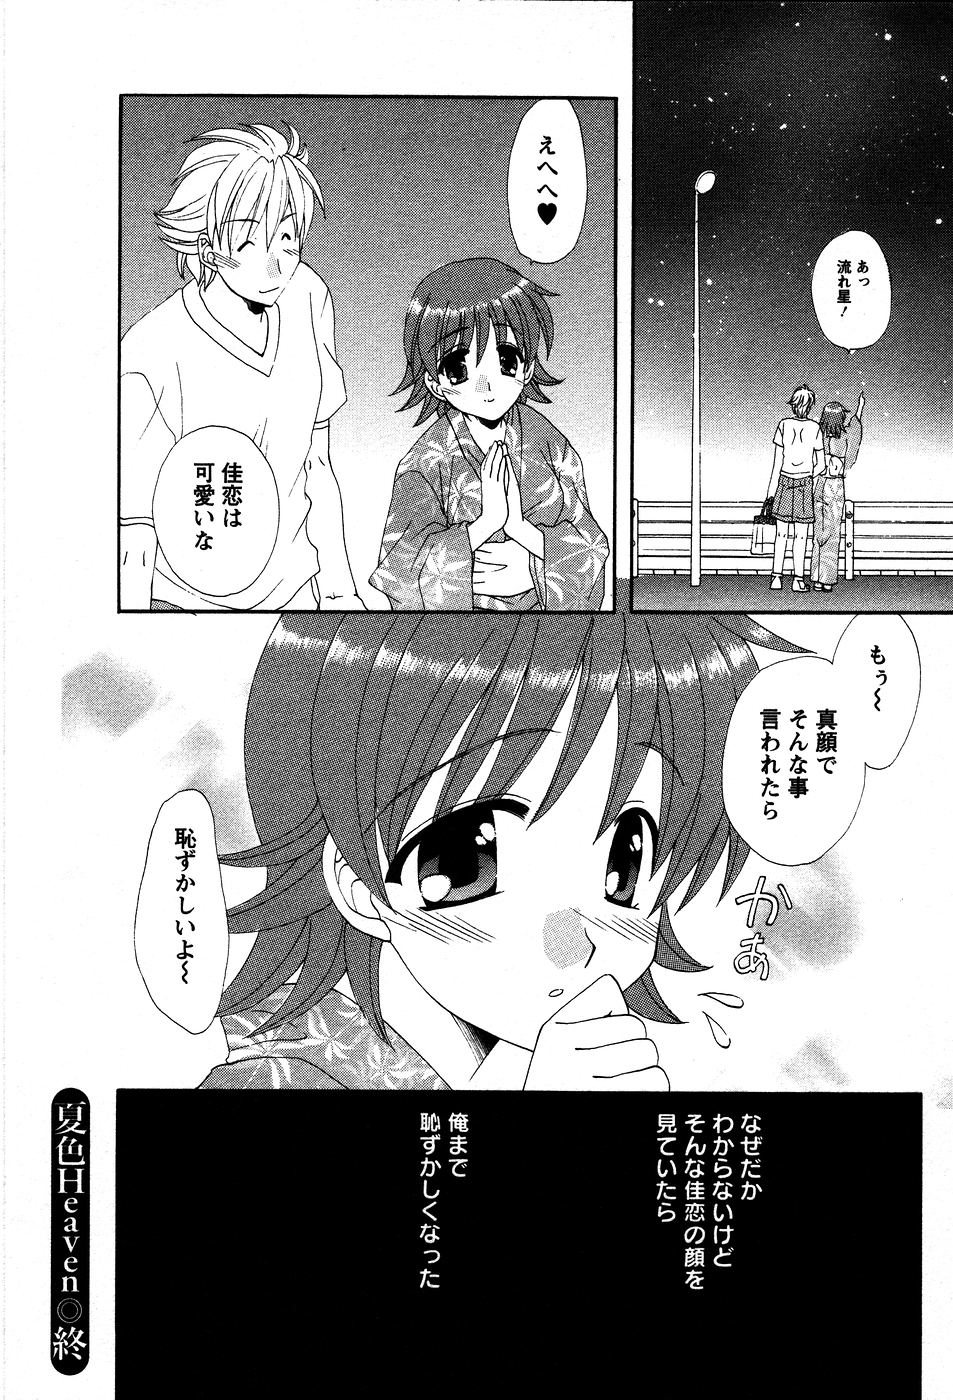 [Kurokawa Mio] Usagi no Hanayome - Rabbit Bride 98